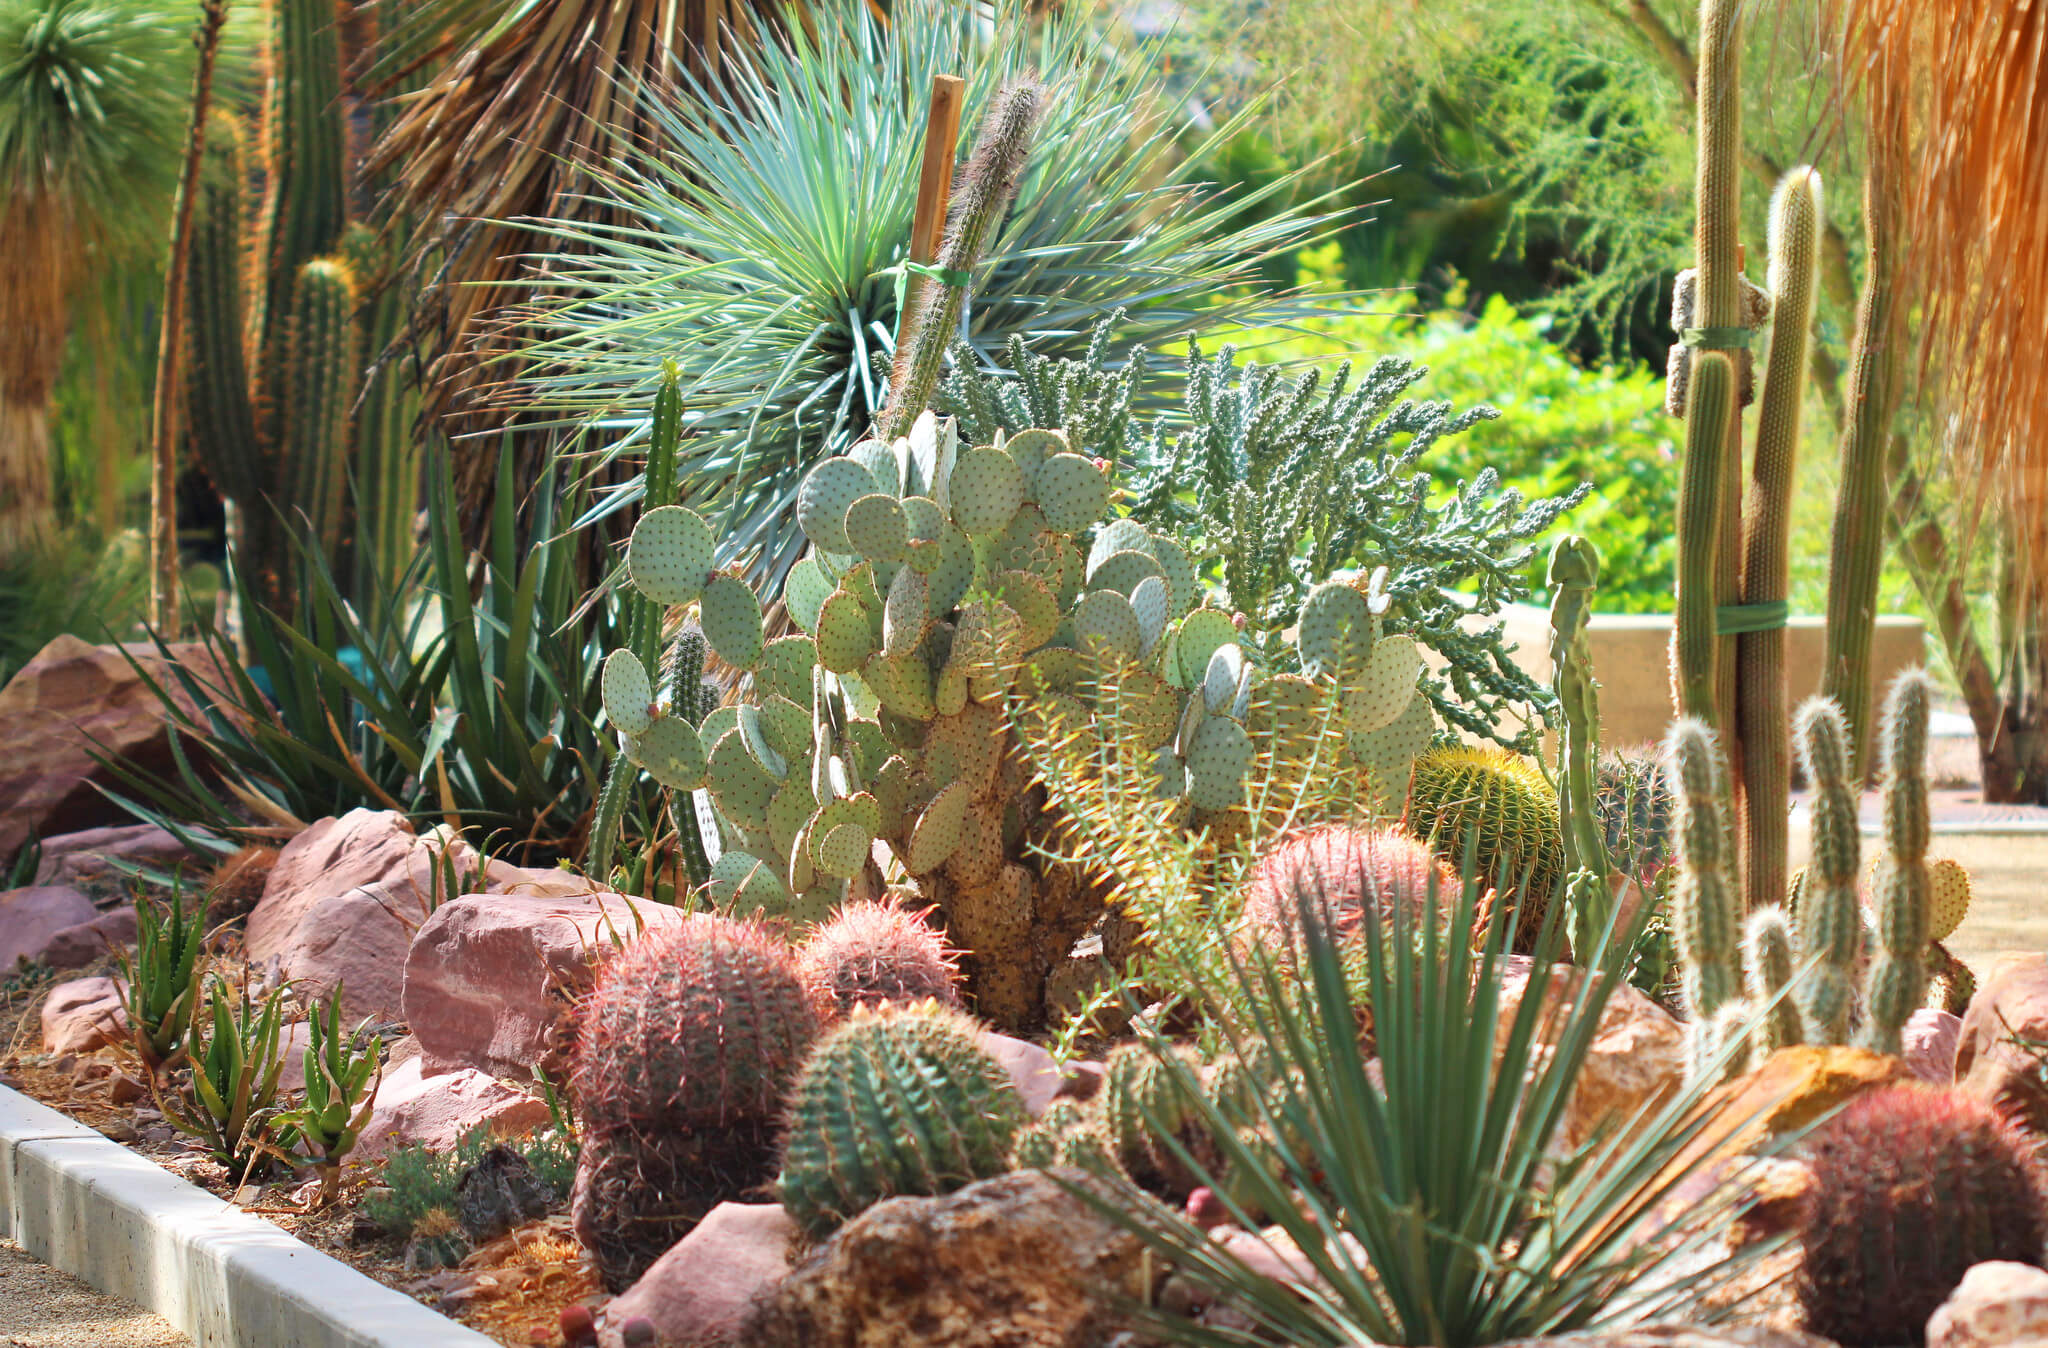 cactus and succulent garden showcased